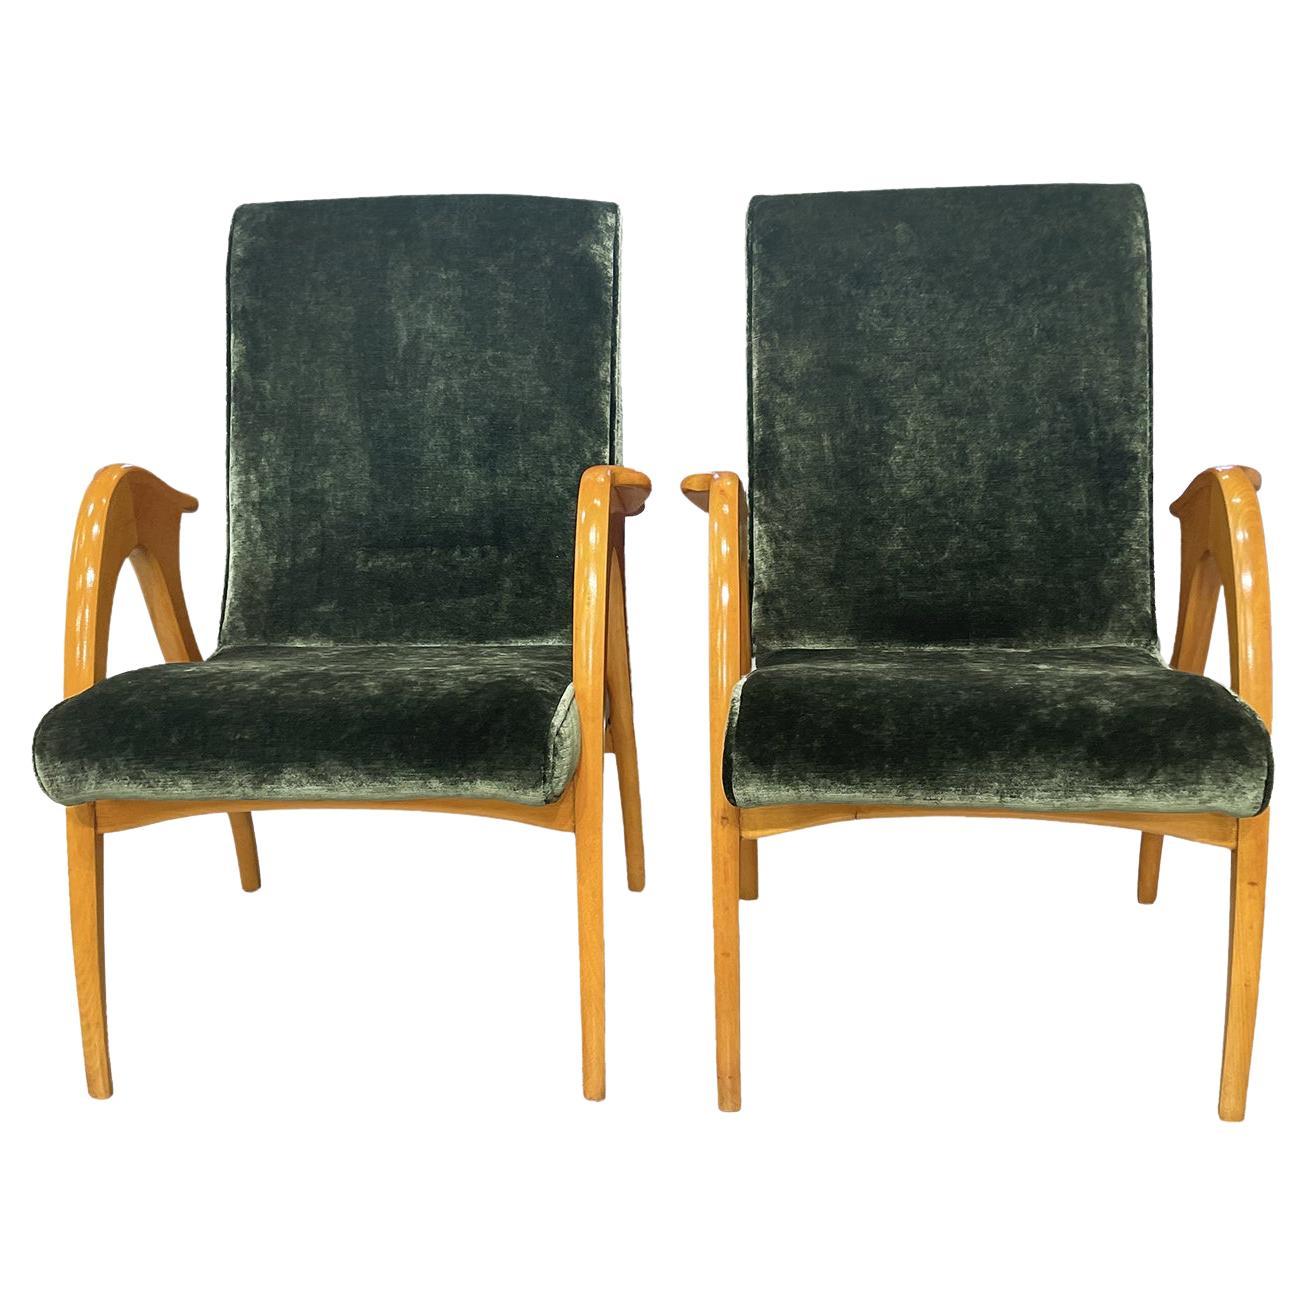 Paire de chaises longues en hêtre vertes italiennes du 20e siècle par Malatesta & Masson